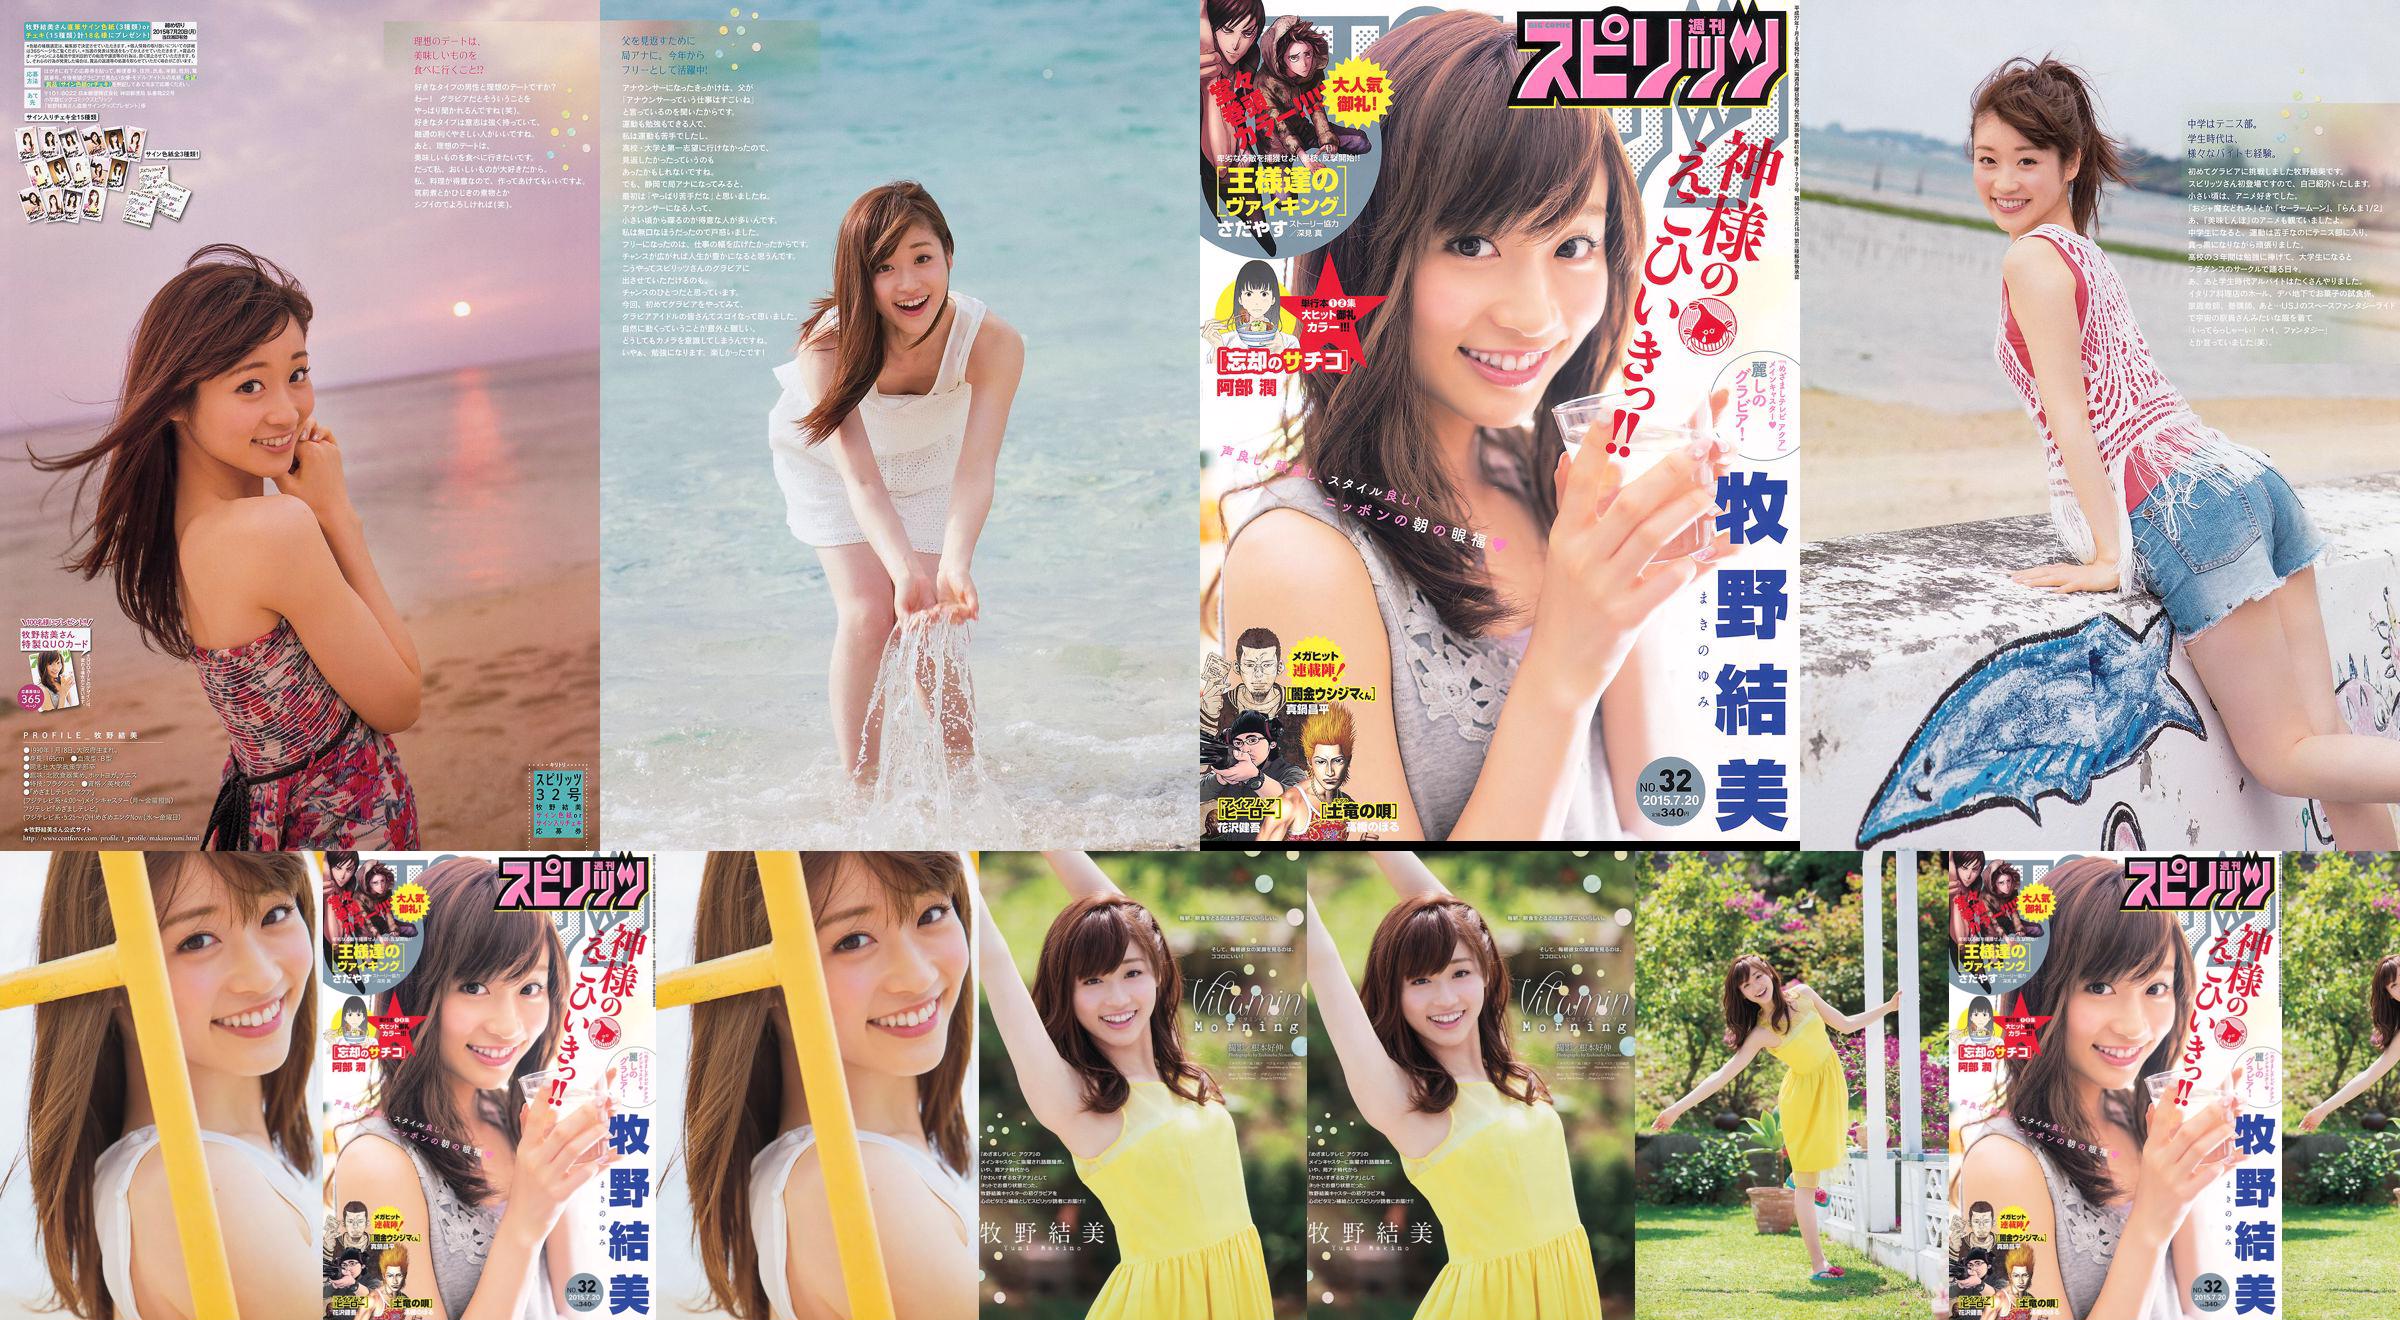 [Weekly Big Comic Spirits] Yumi Makino 2015 No.32 Photo Magazine No.5d4770 Página 2